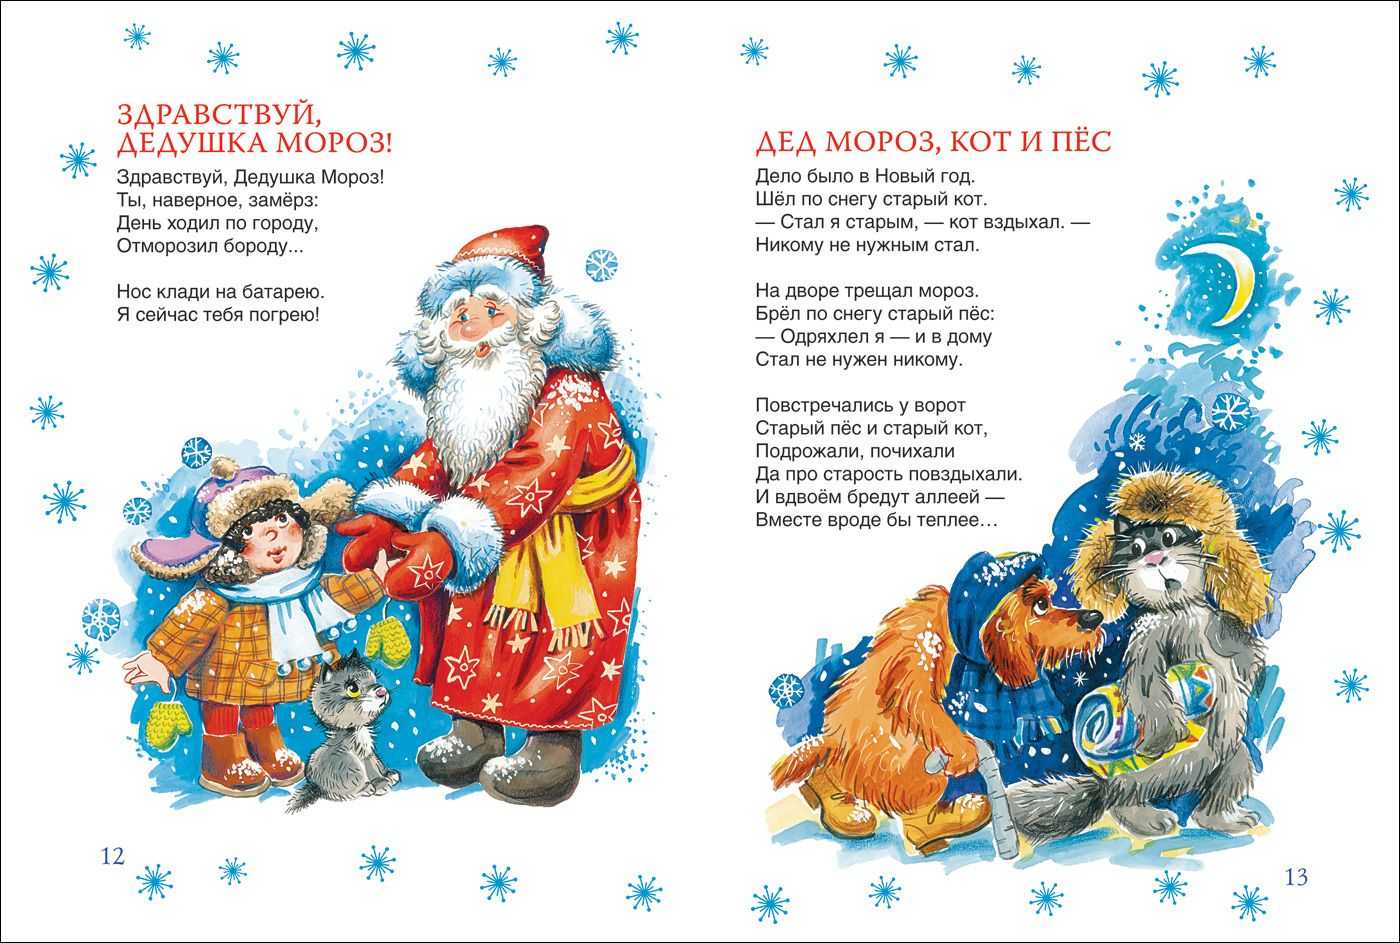 80 коротких детских стихов для деда мороза: сборник несложных зимних стихотворений про новый год, елку, снегурочку, снег, деда мороза